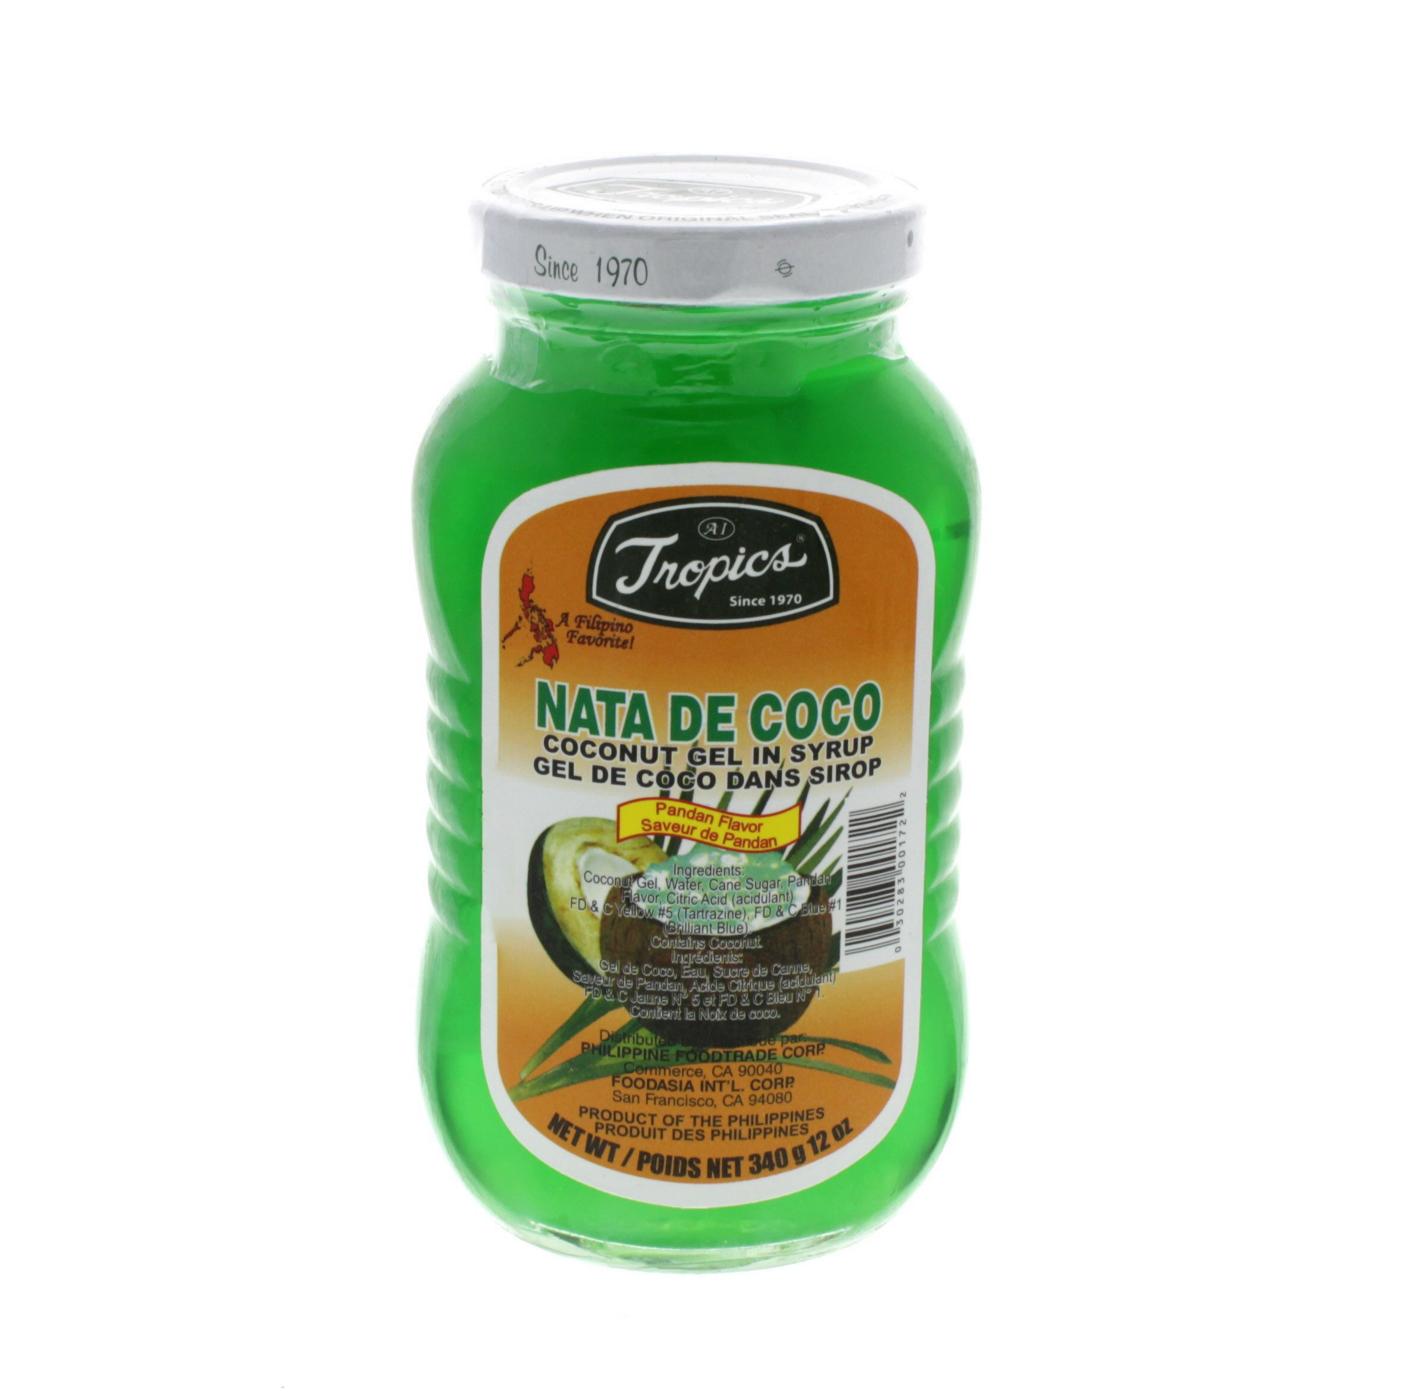 Tropics Nata De Coco Coconut Gel In Syrup, Pandan Flavor; image 1 of 2